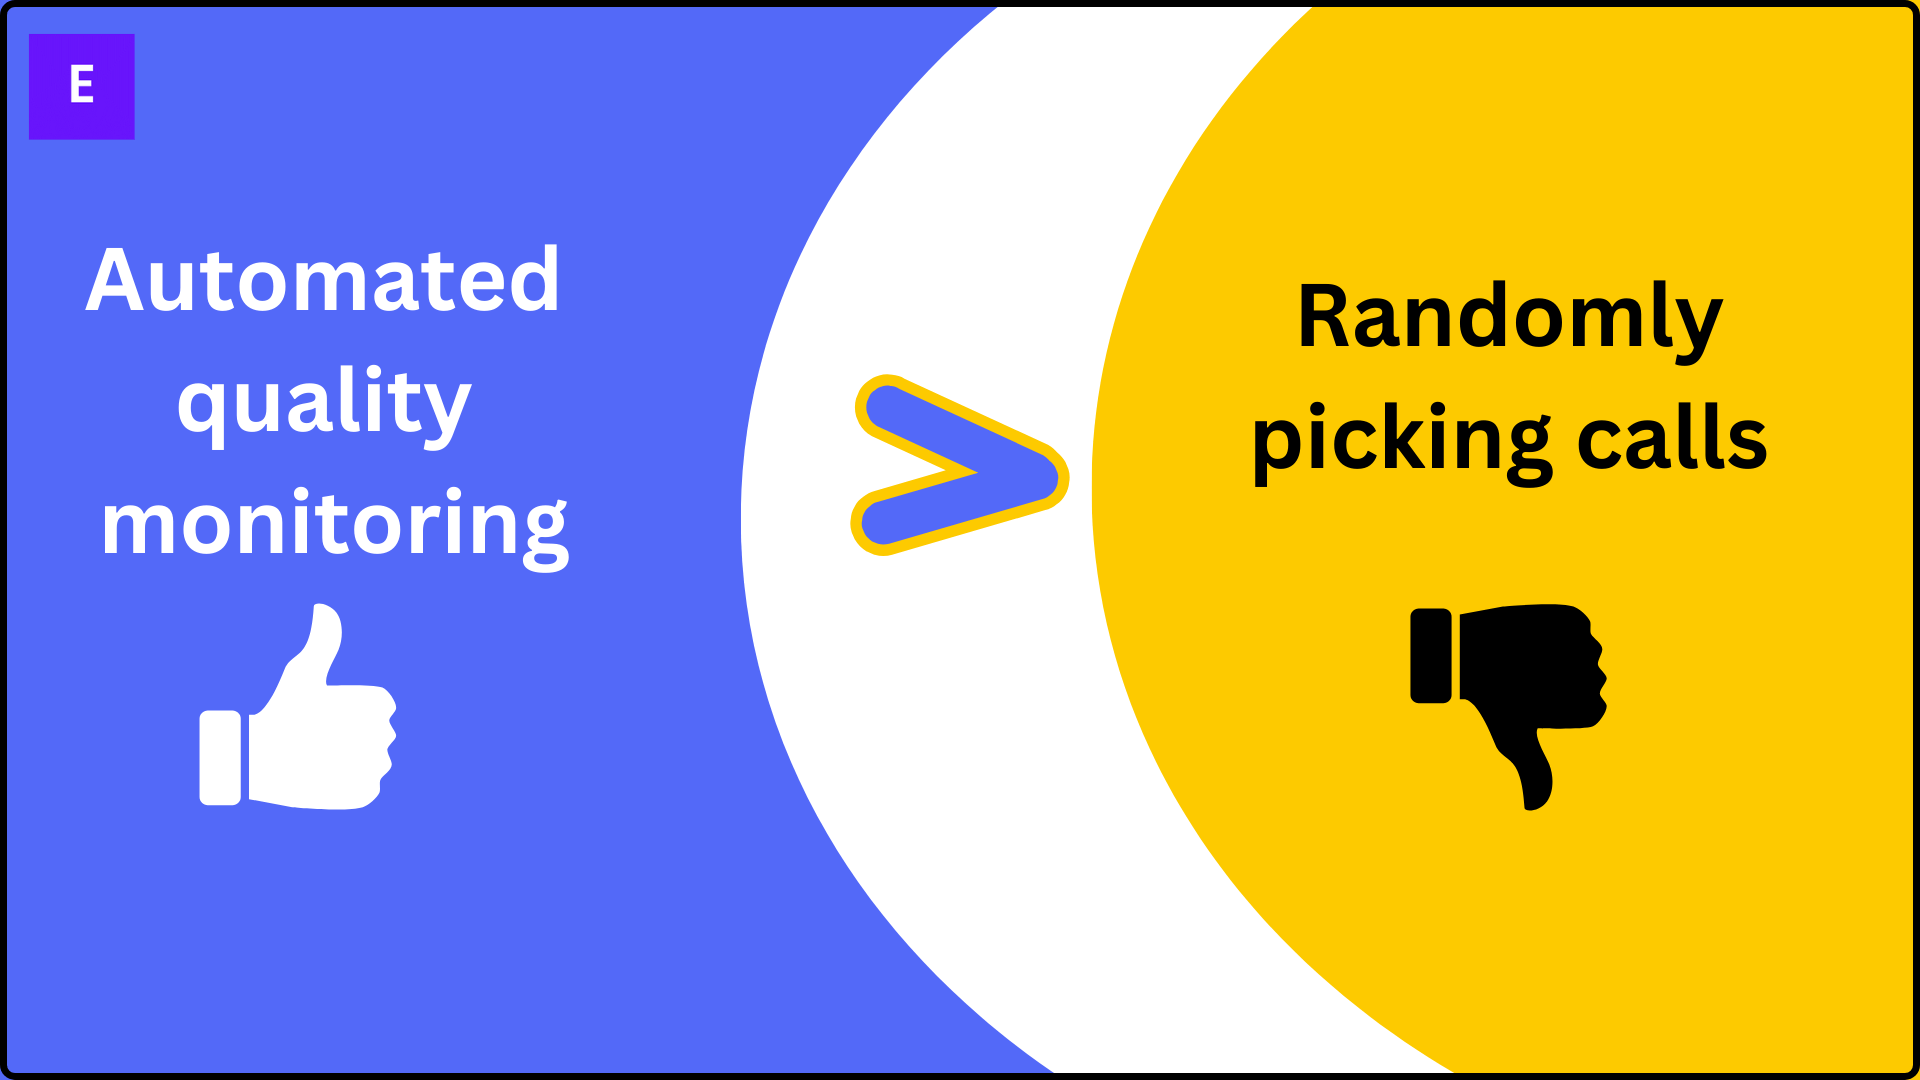 automated quality monitoring vs randomly picking calls